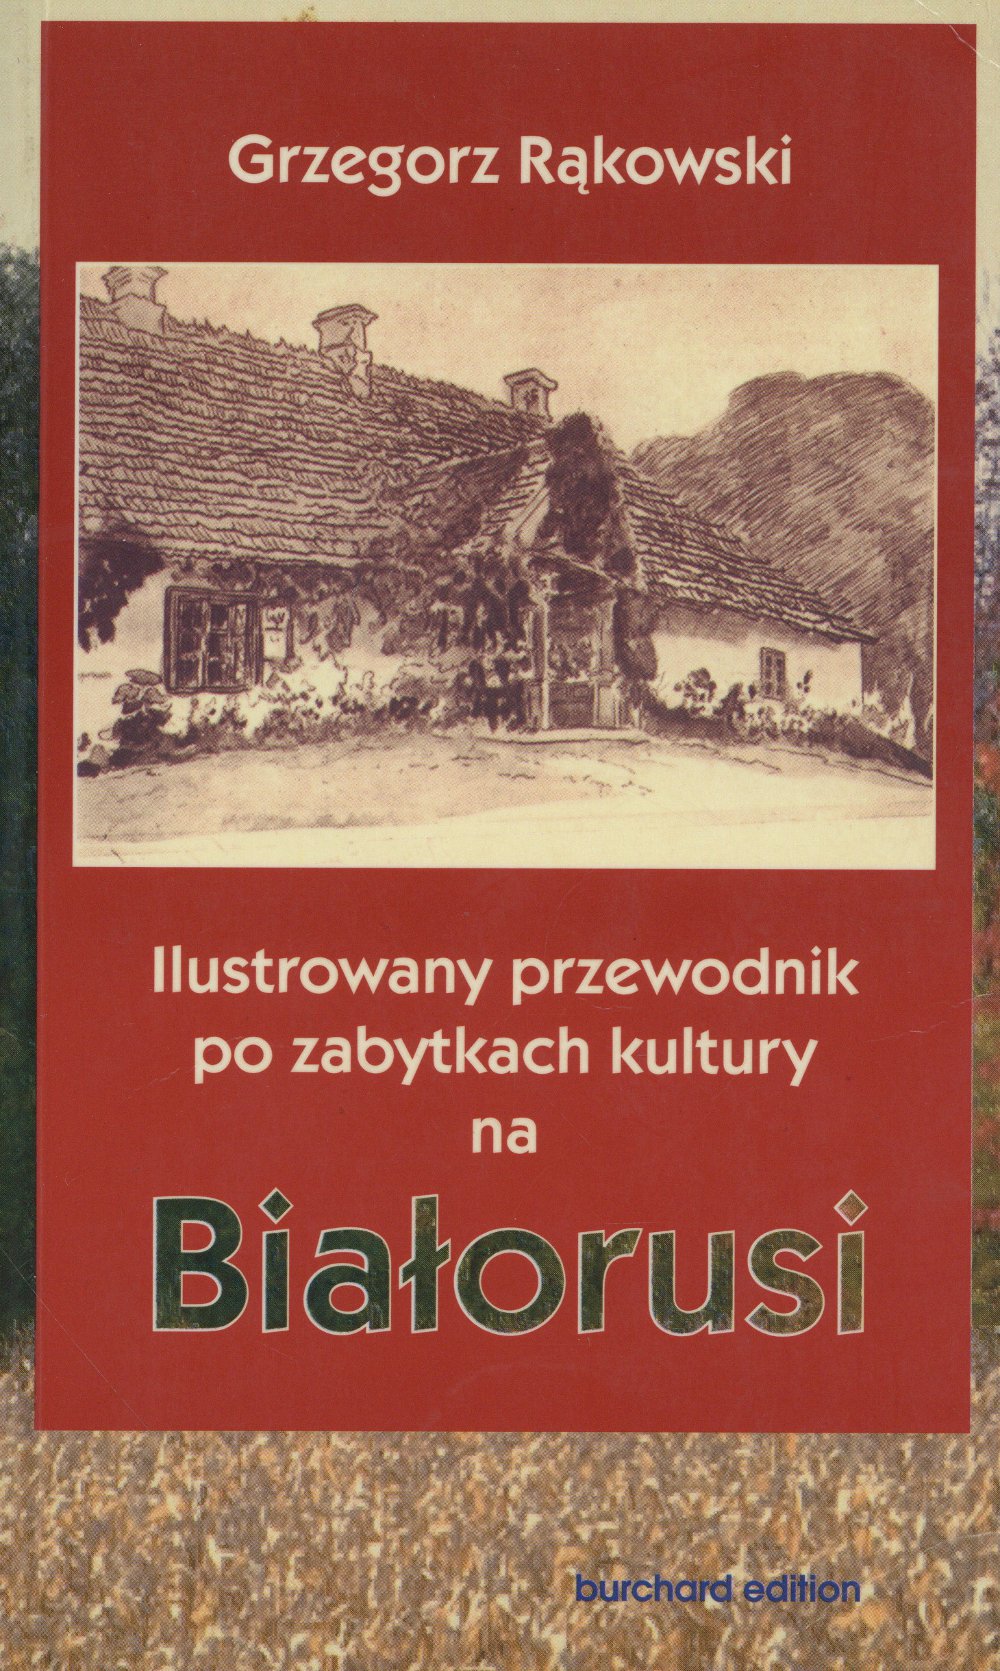 Ilustrowany przewodnik po zabutkach kultury Białorusi